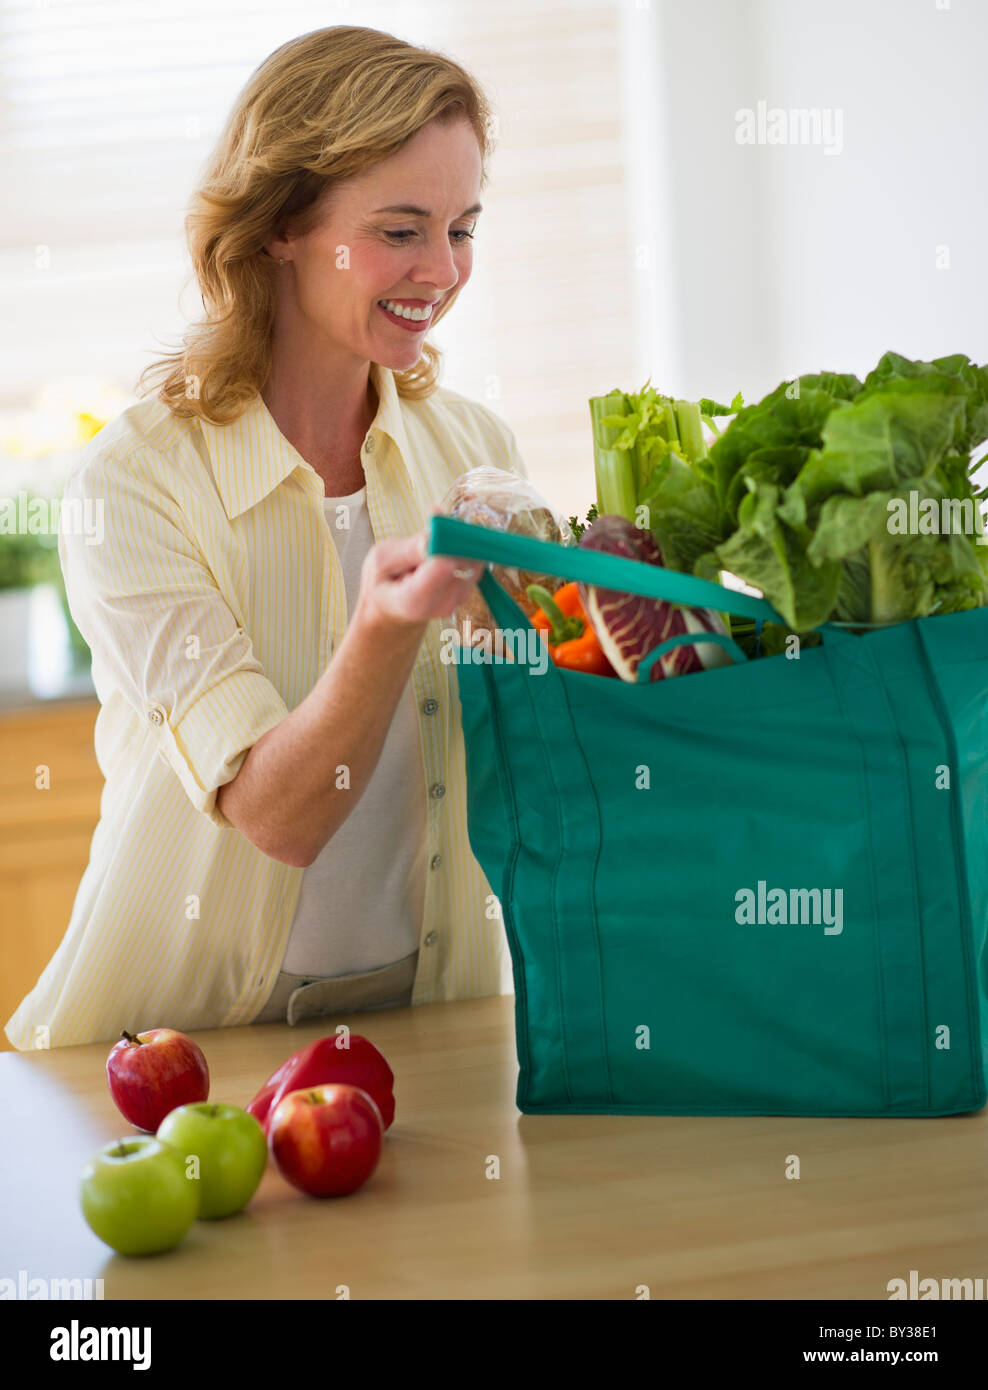 Stati Uniti d'America, New Jersey, Jersey City, Donna con sacchetto shopper in cucina Foto Stock